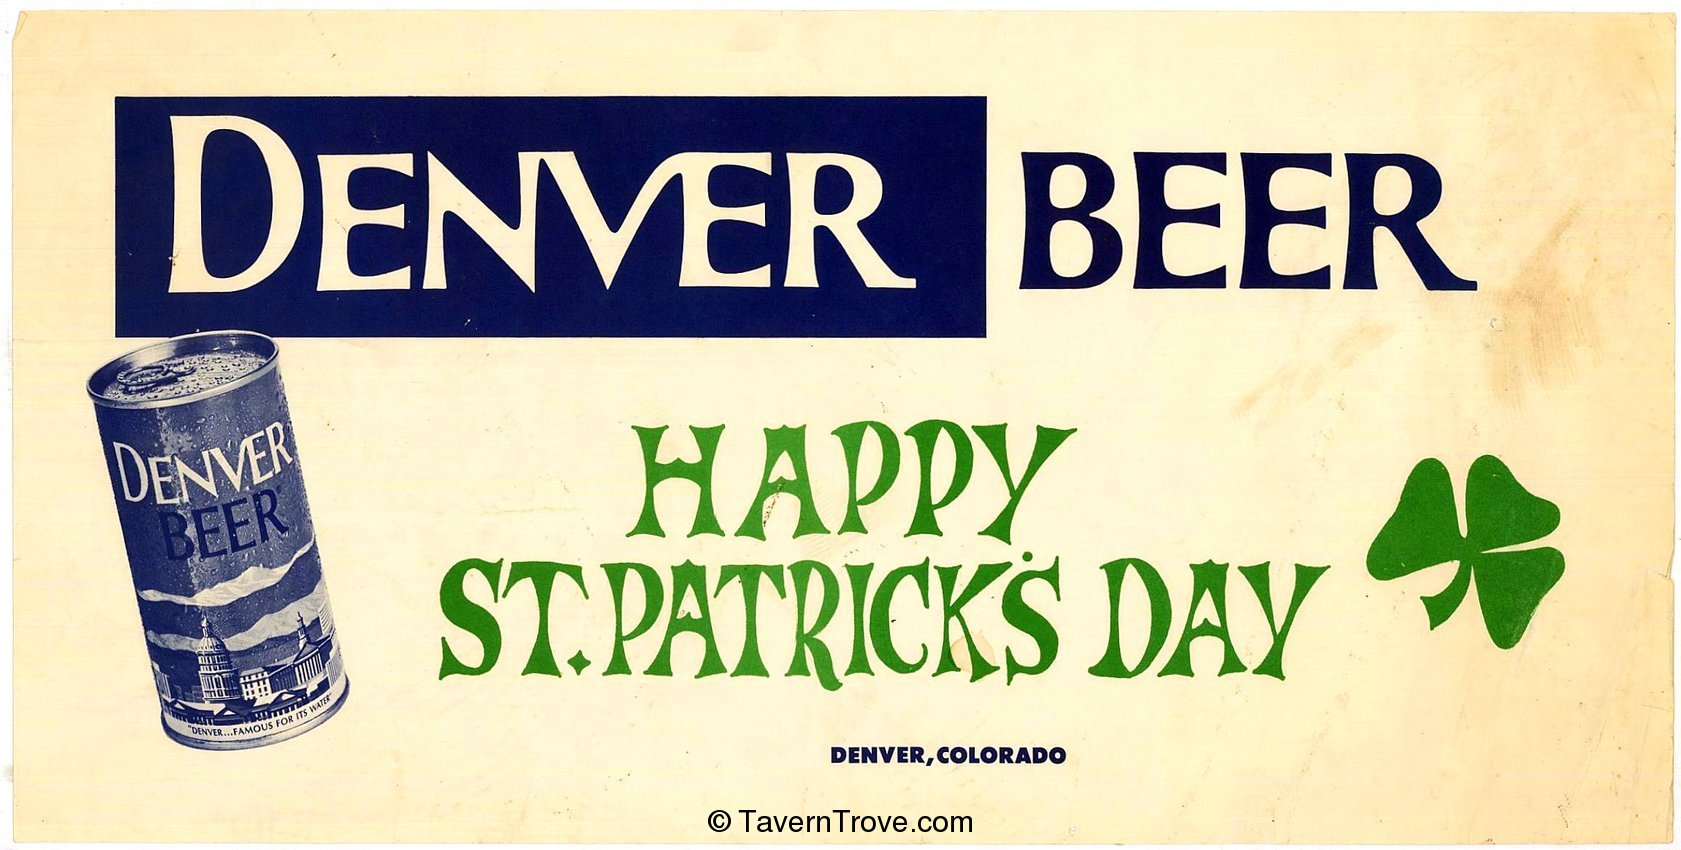 Denver Beer poster